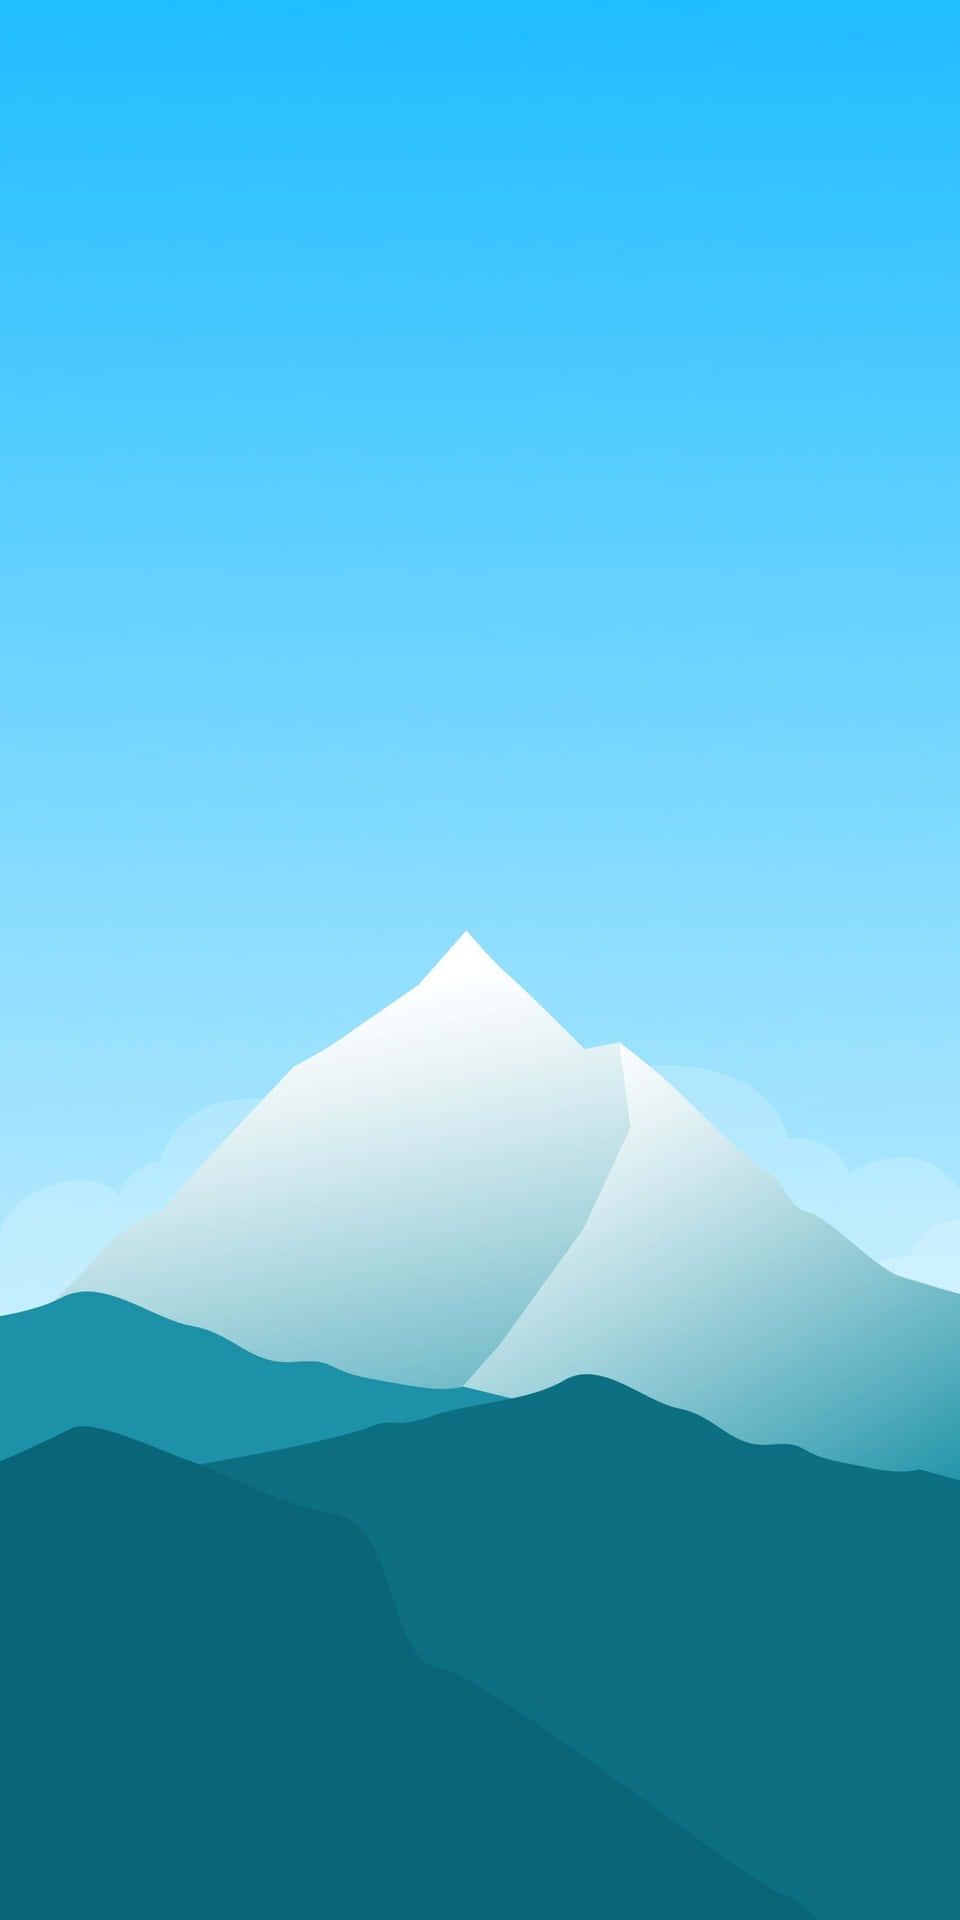 Pixel3 Minimaler Hintergrund Mit Leicht Blau Getöntem Weißen Berg